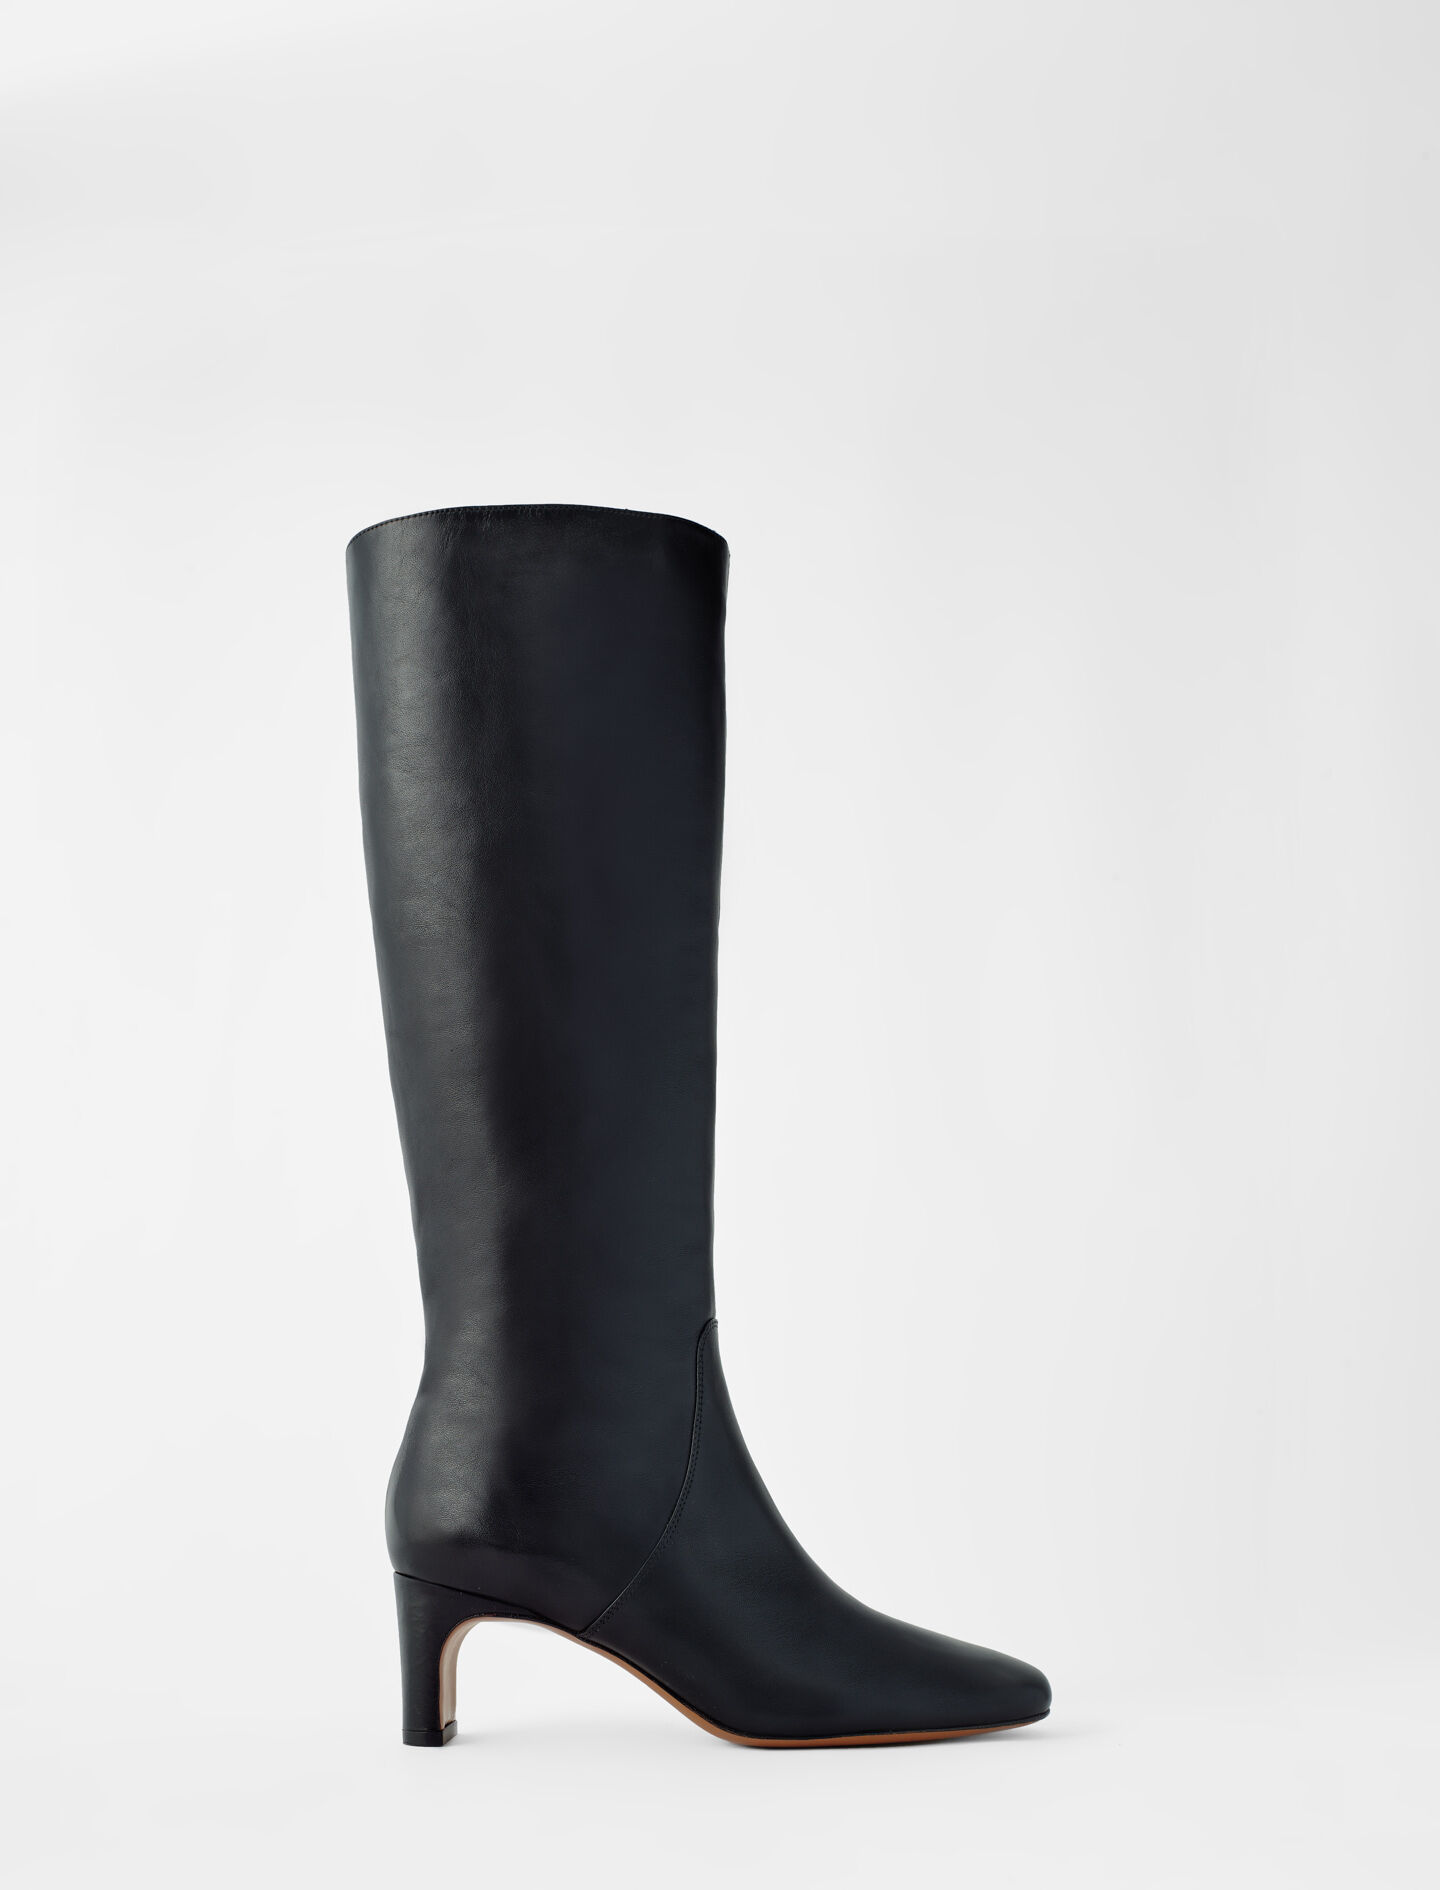 black leather mid heel boots